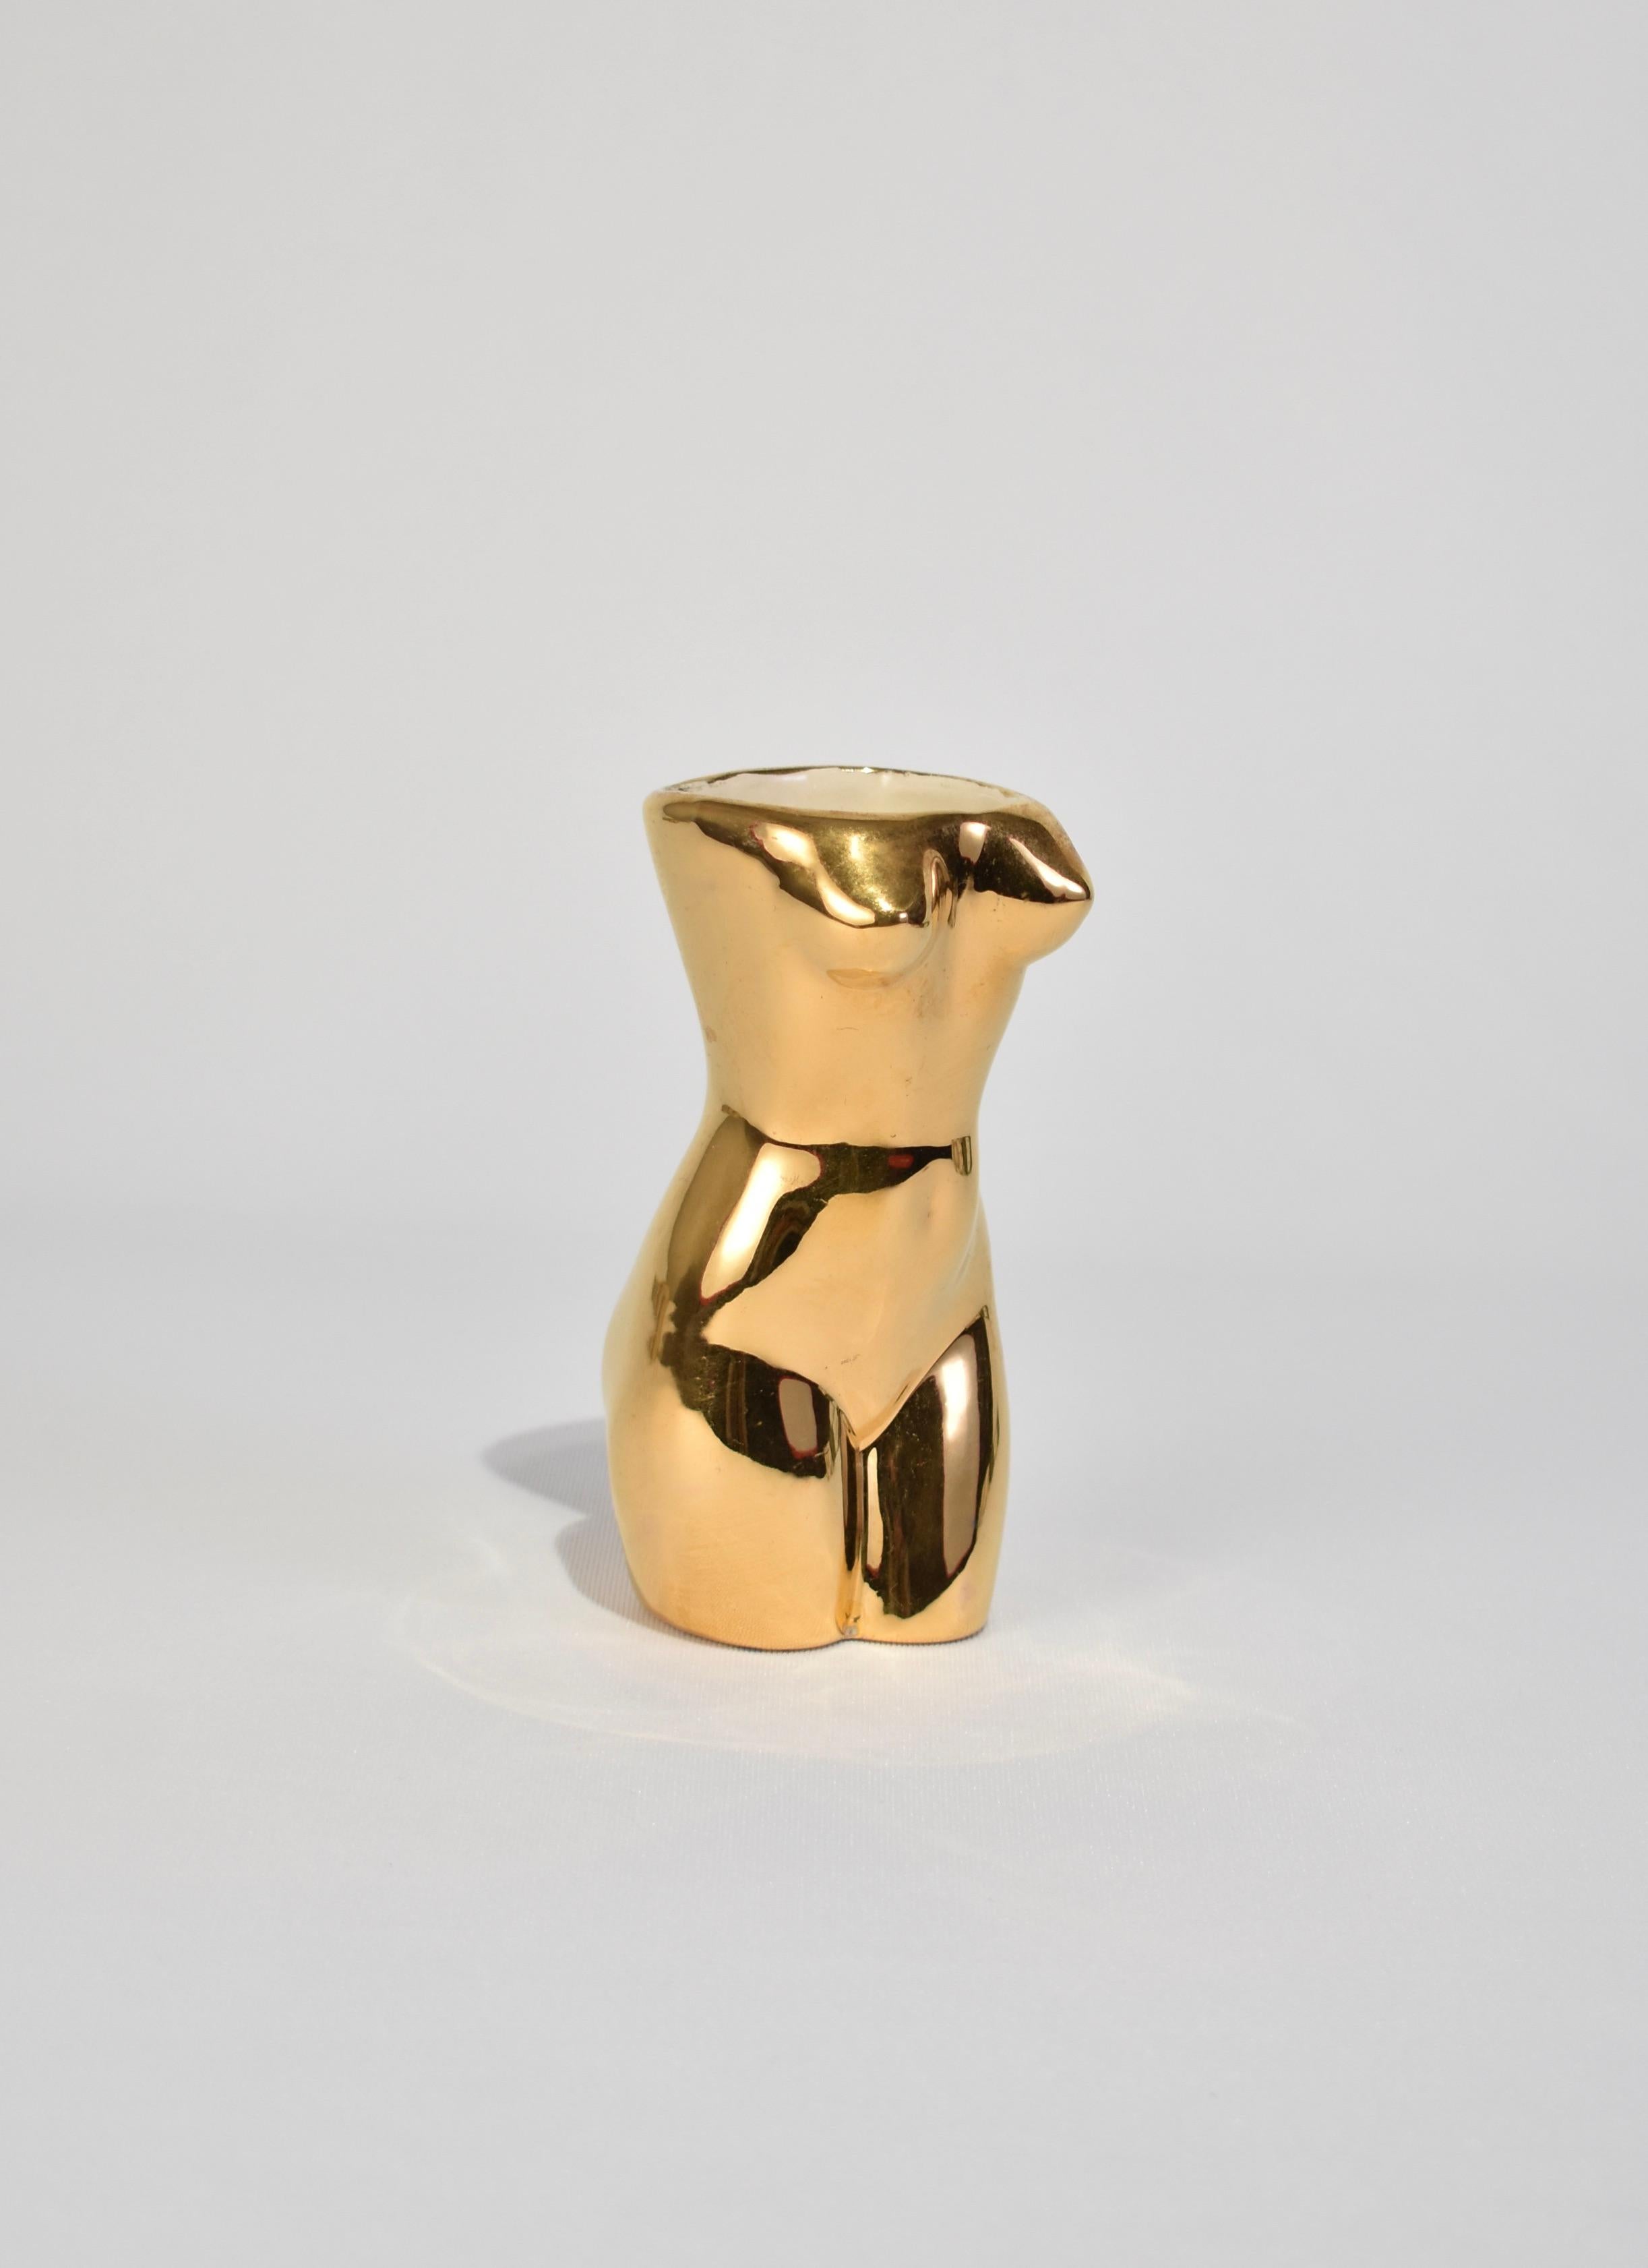 Handgefertigte, zierliche Torso-Vase aus Vintage-Keramik mit schimmernder Goldglasur. Auf dem Sockel signiert.